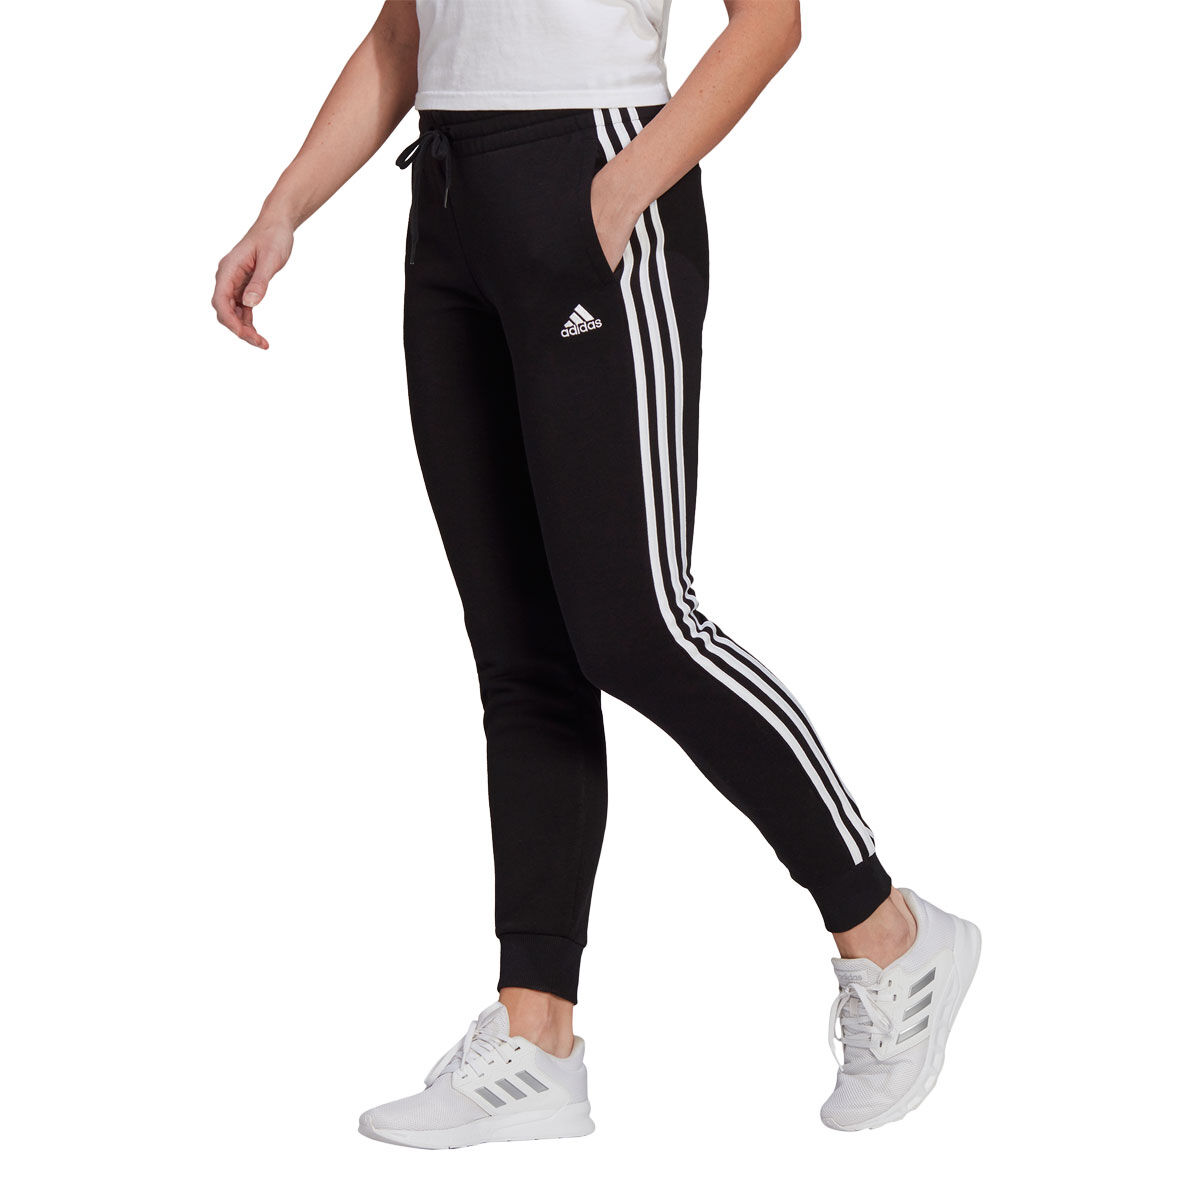 Adidas Women Ladies Essential 3 Stripes Black & White Track Pants M Medium  NWT